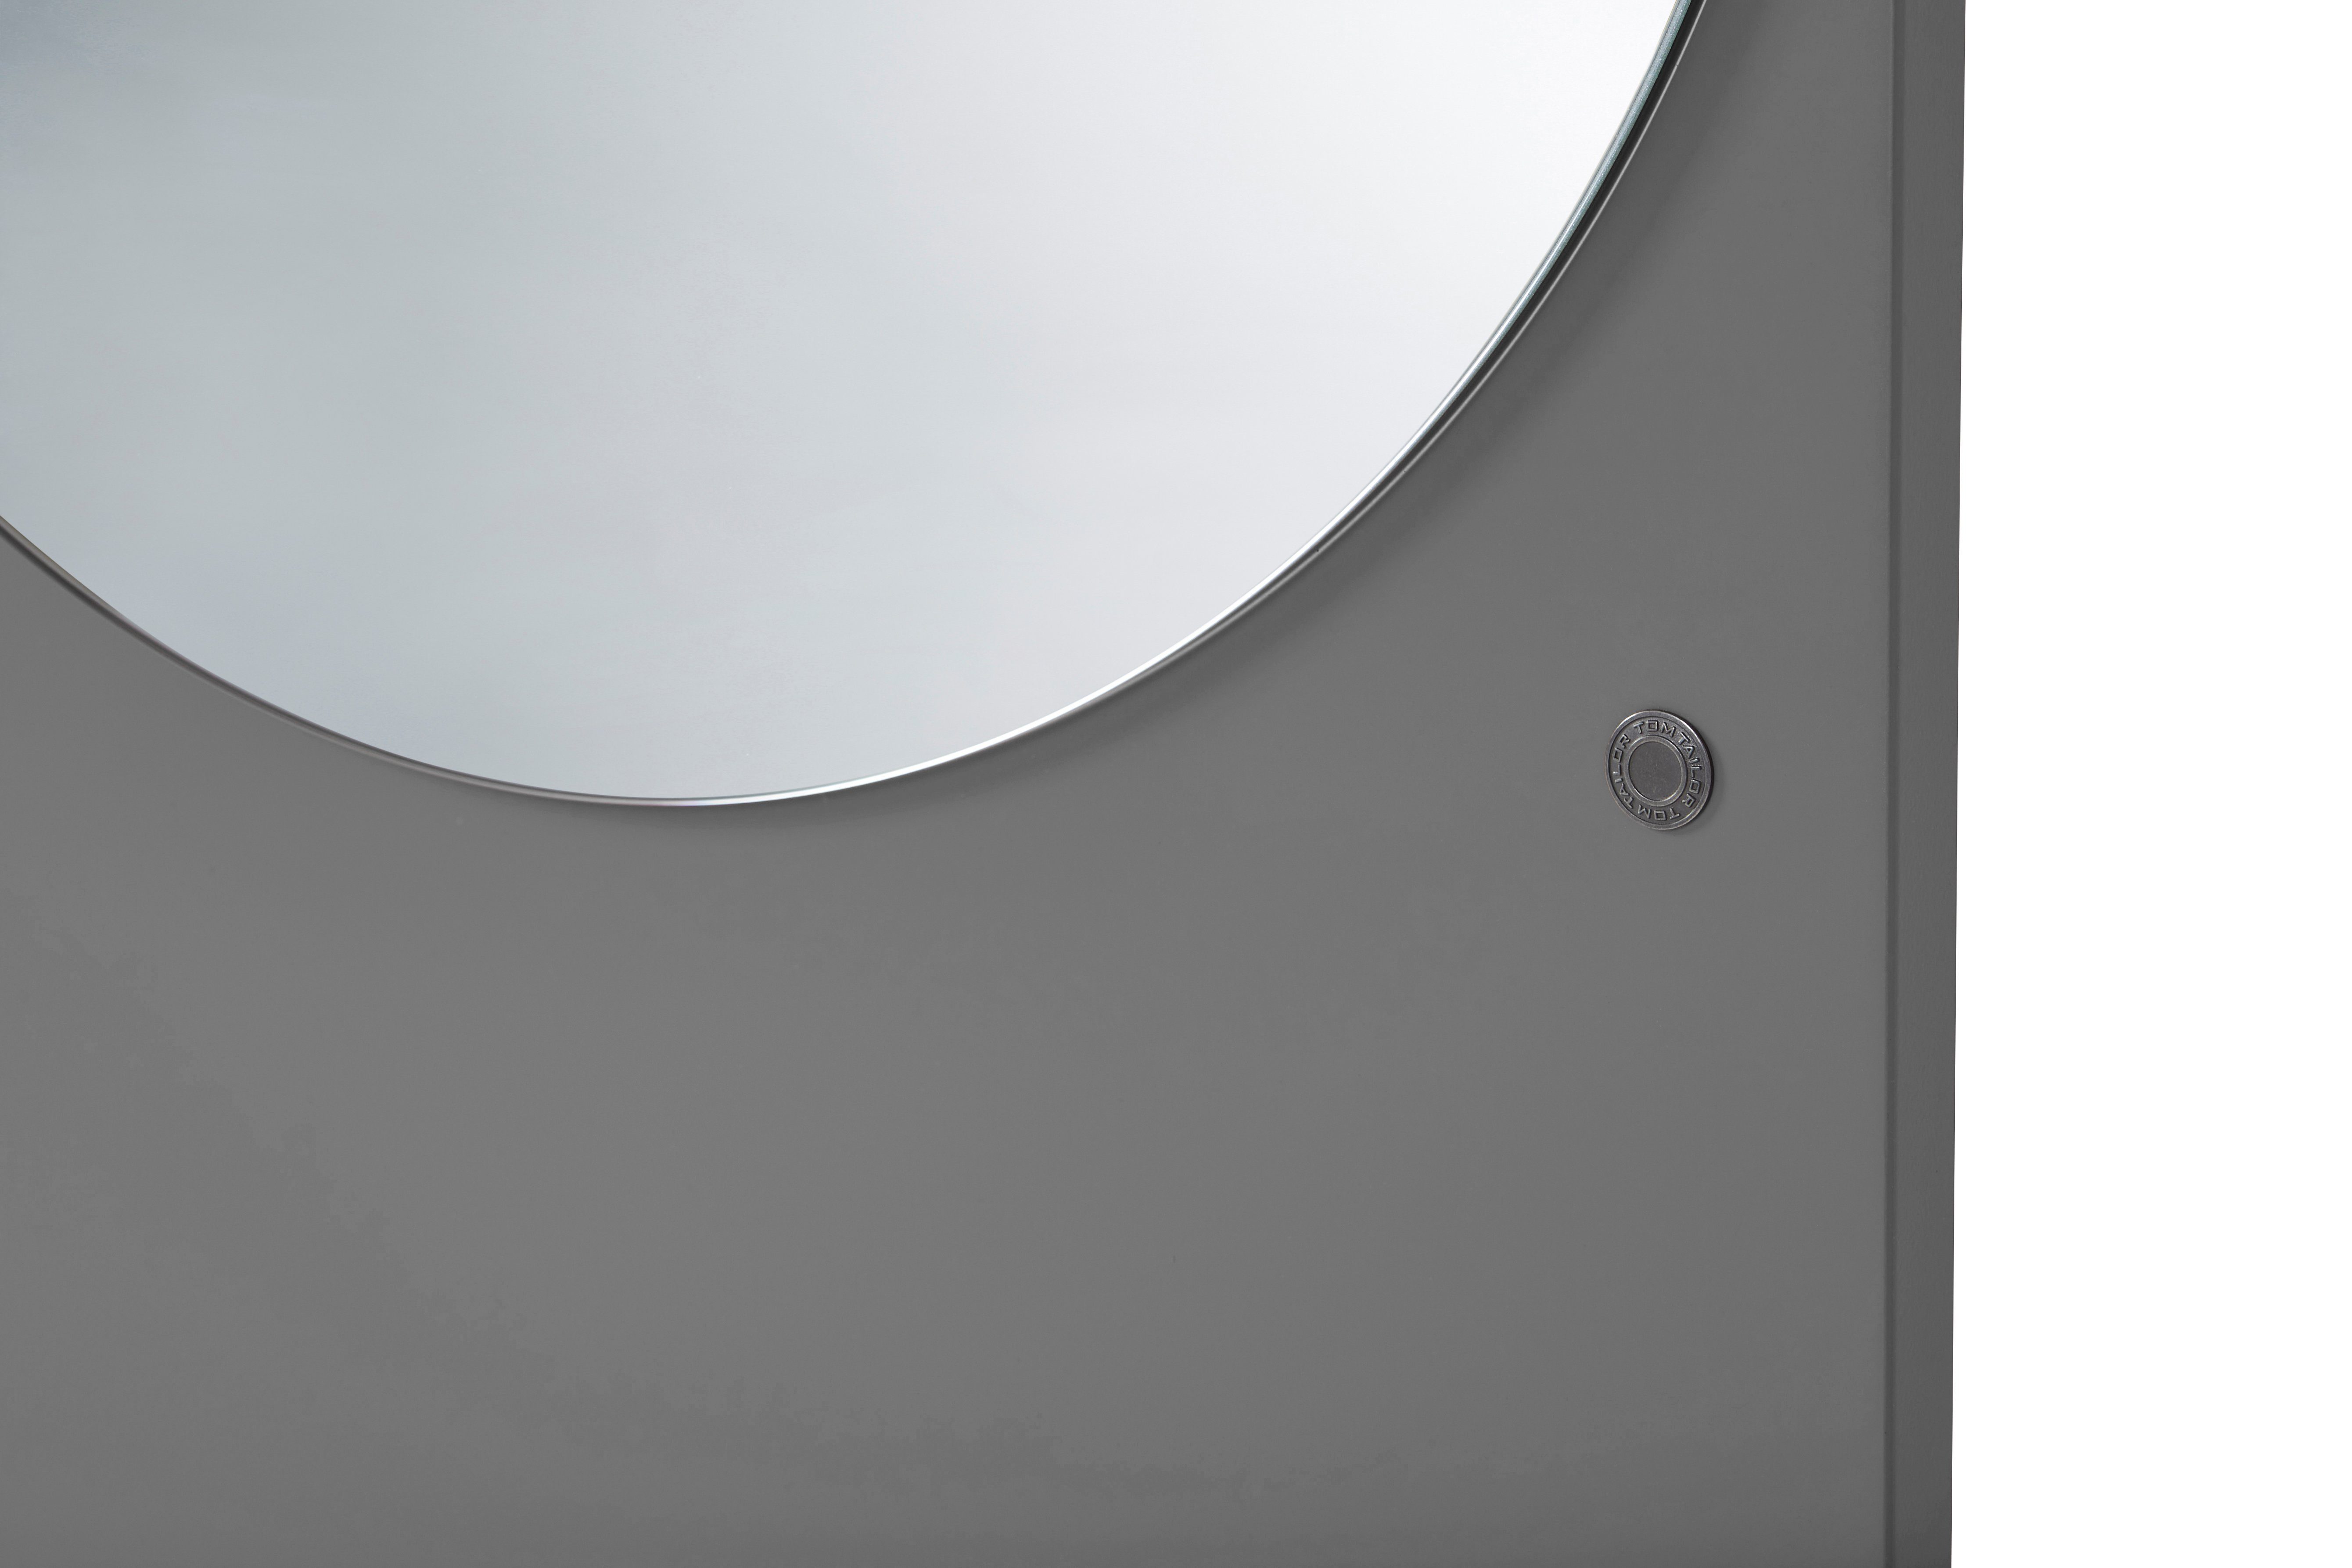 TOM TAILOR HOME besonderer grey012 & vielen - Form COLOR Standspiegel farbiges MIRROR Wandlehnender - in Spiegel in schönen Farben hochwertig Highlight lackiert